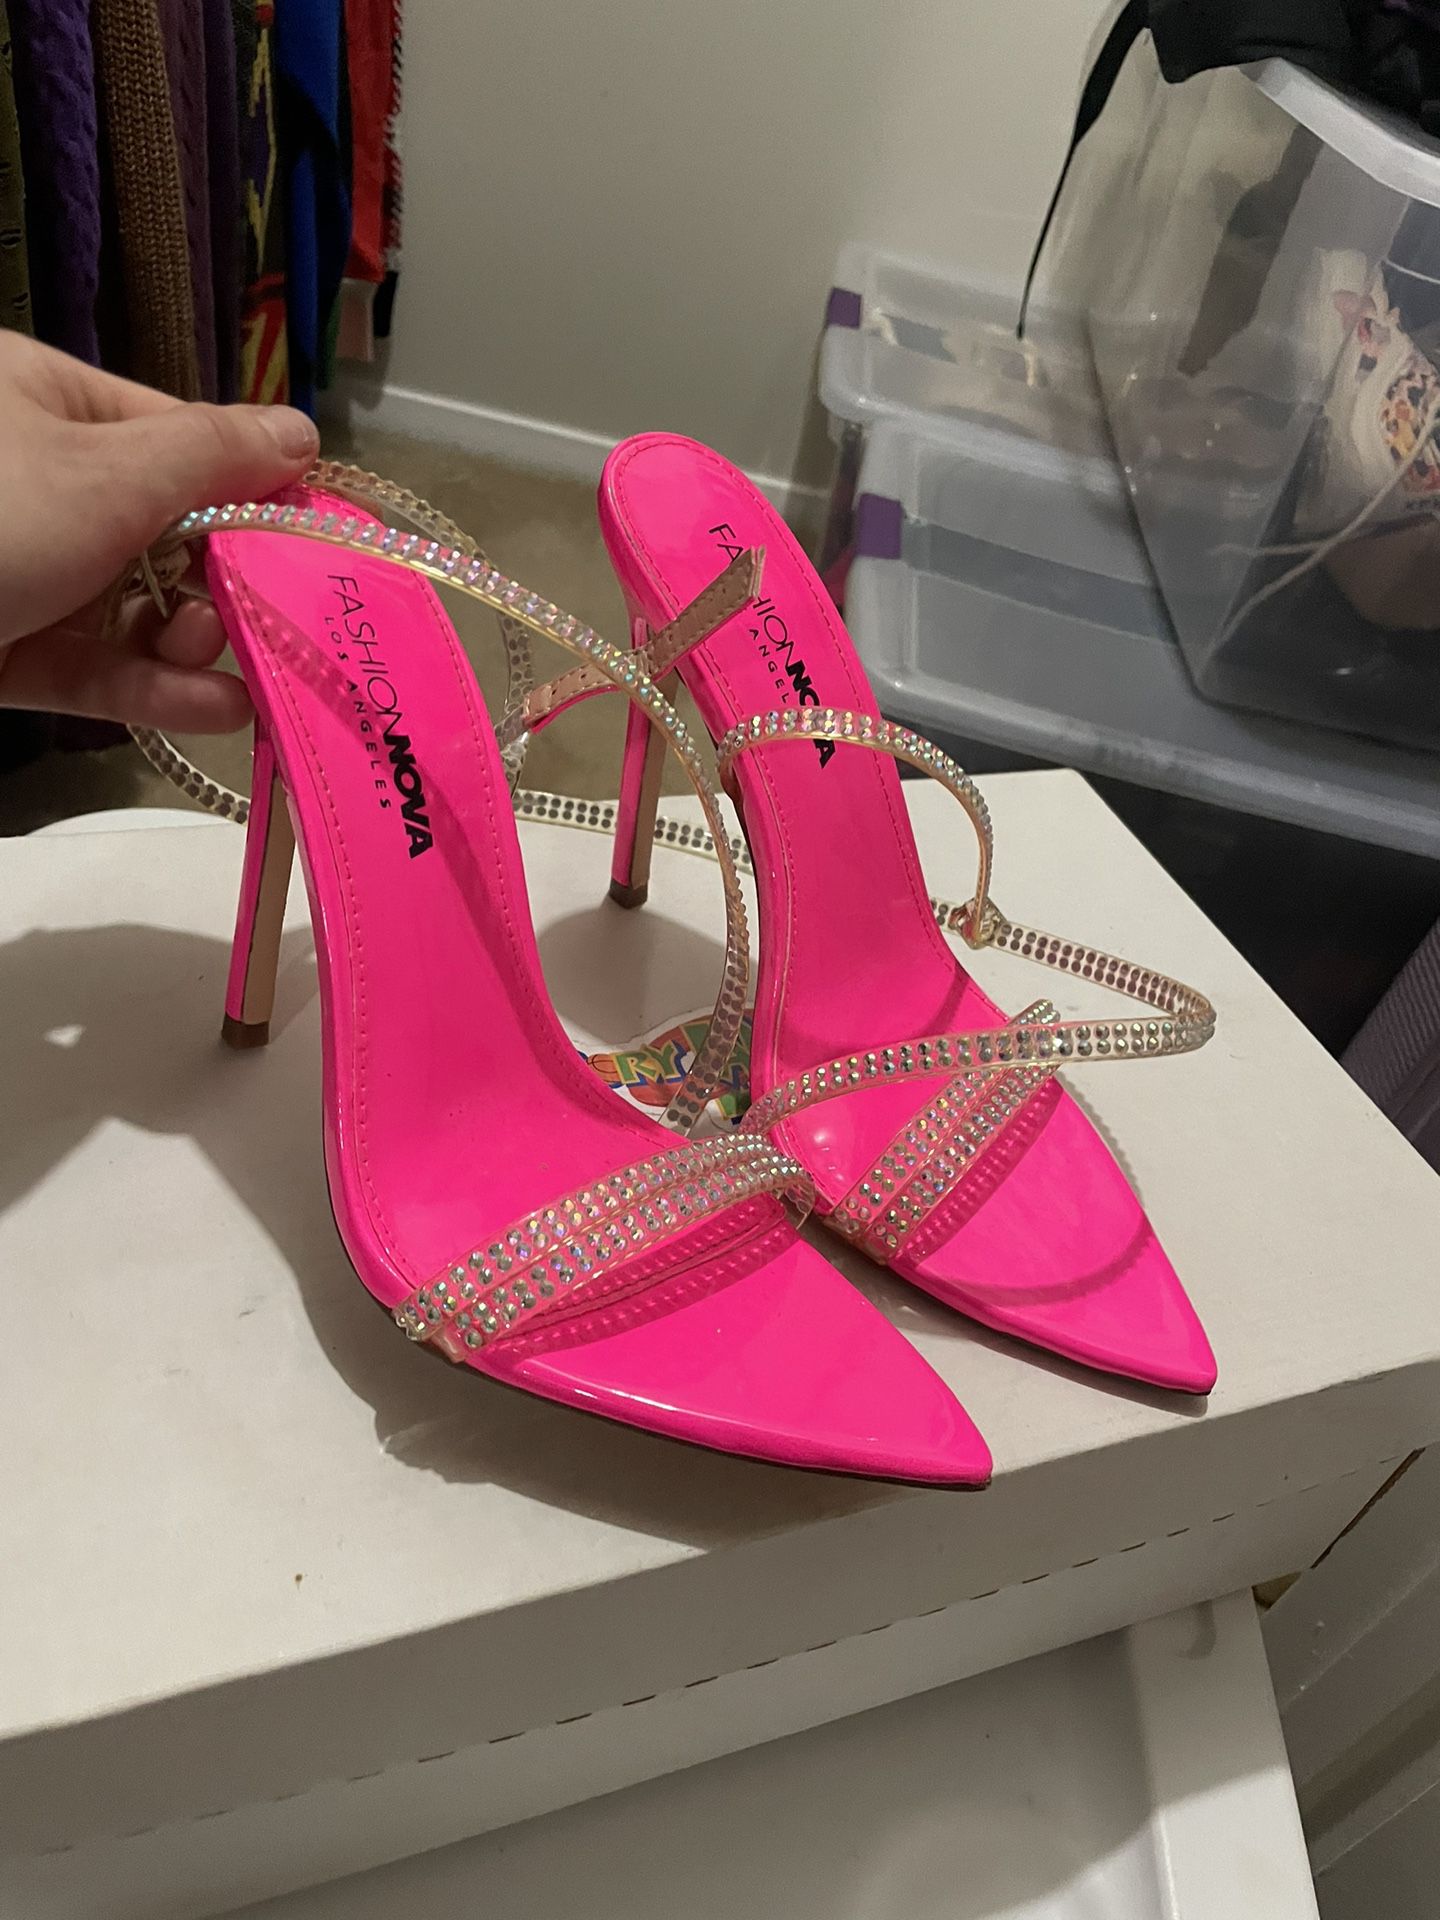 Hot pink Heels